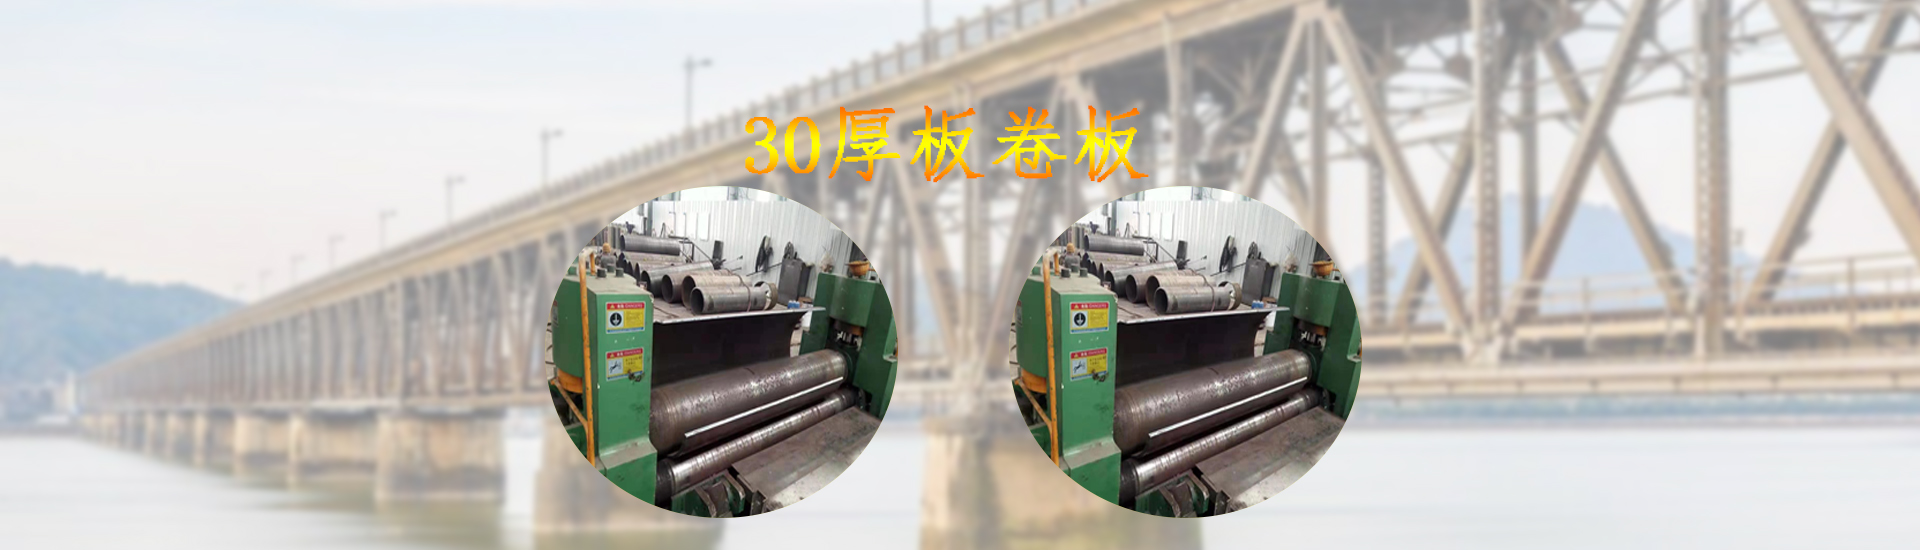 贵州桥建钢模制品生产有限公司【官网】